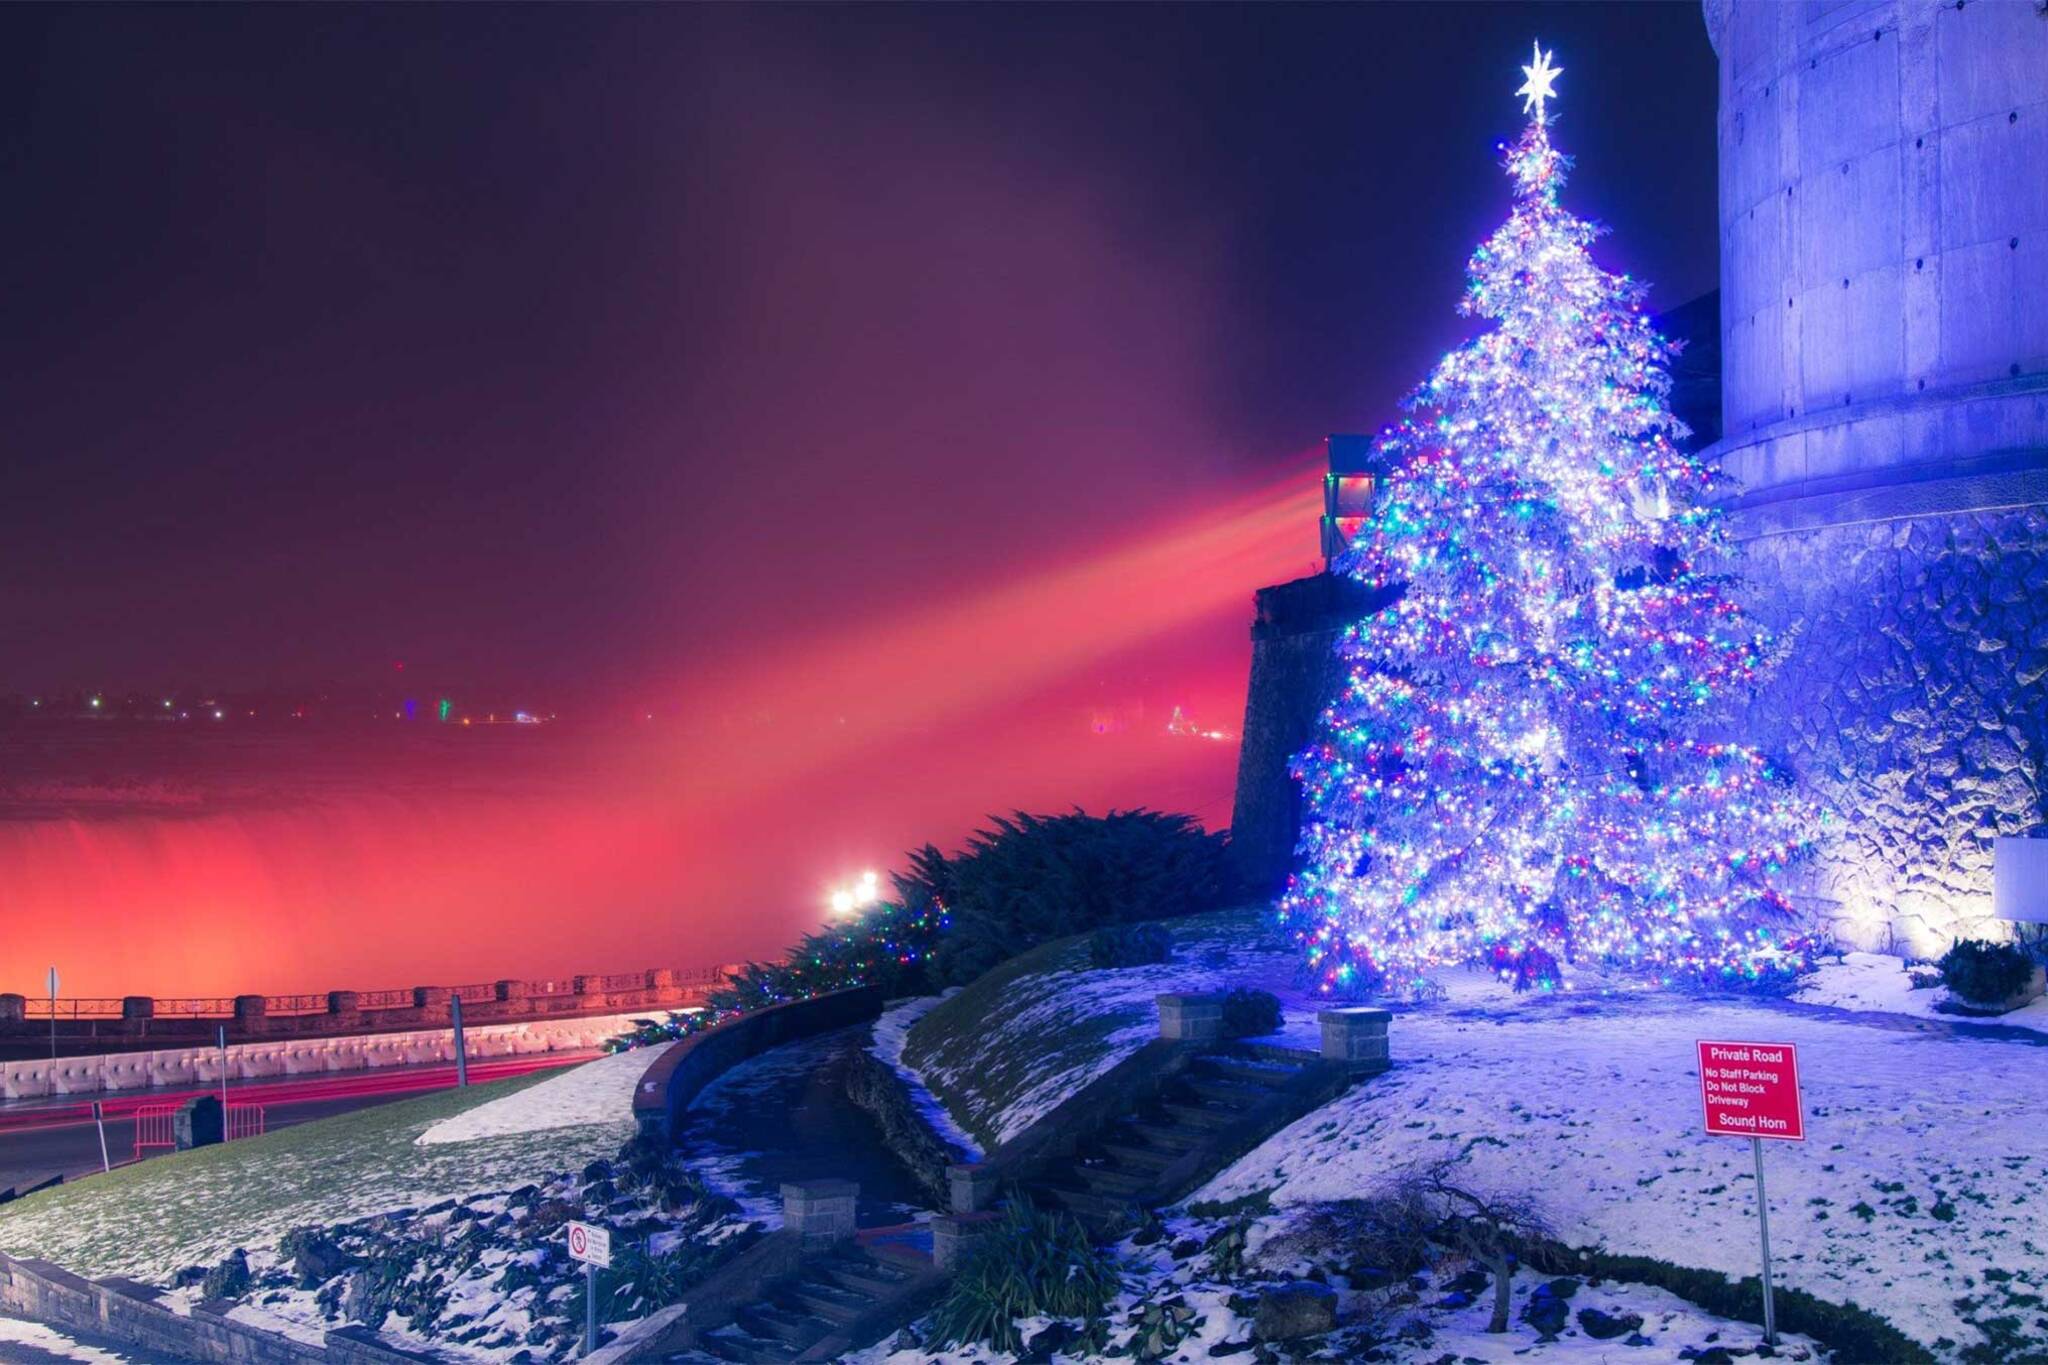 The magical holiday lights festival at Niagara Falls starts next week